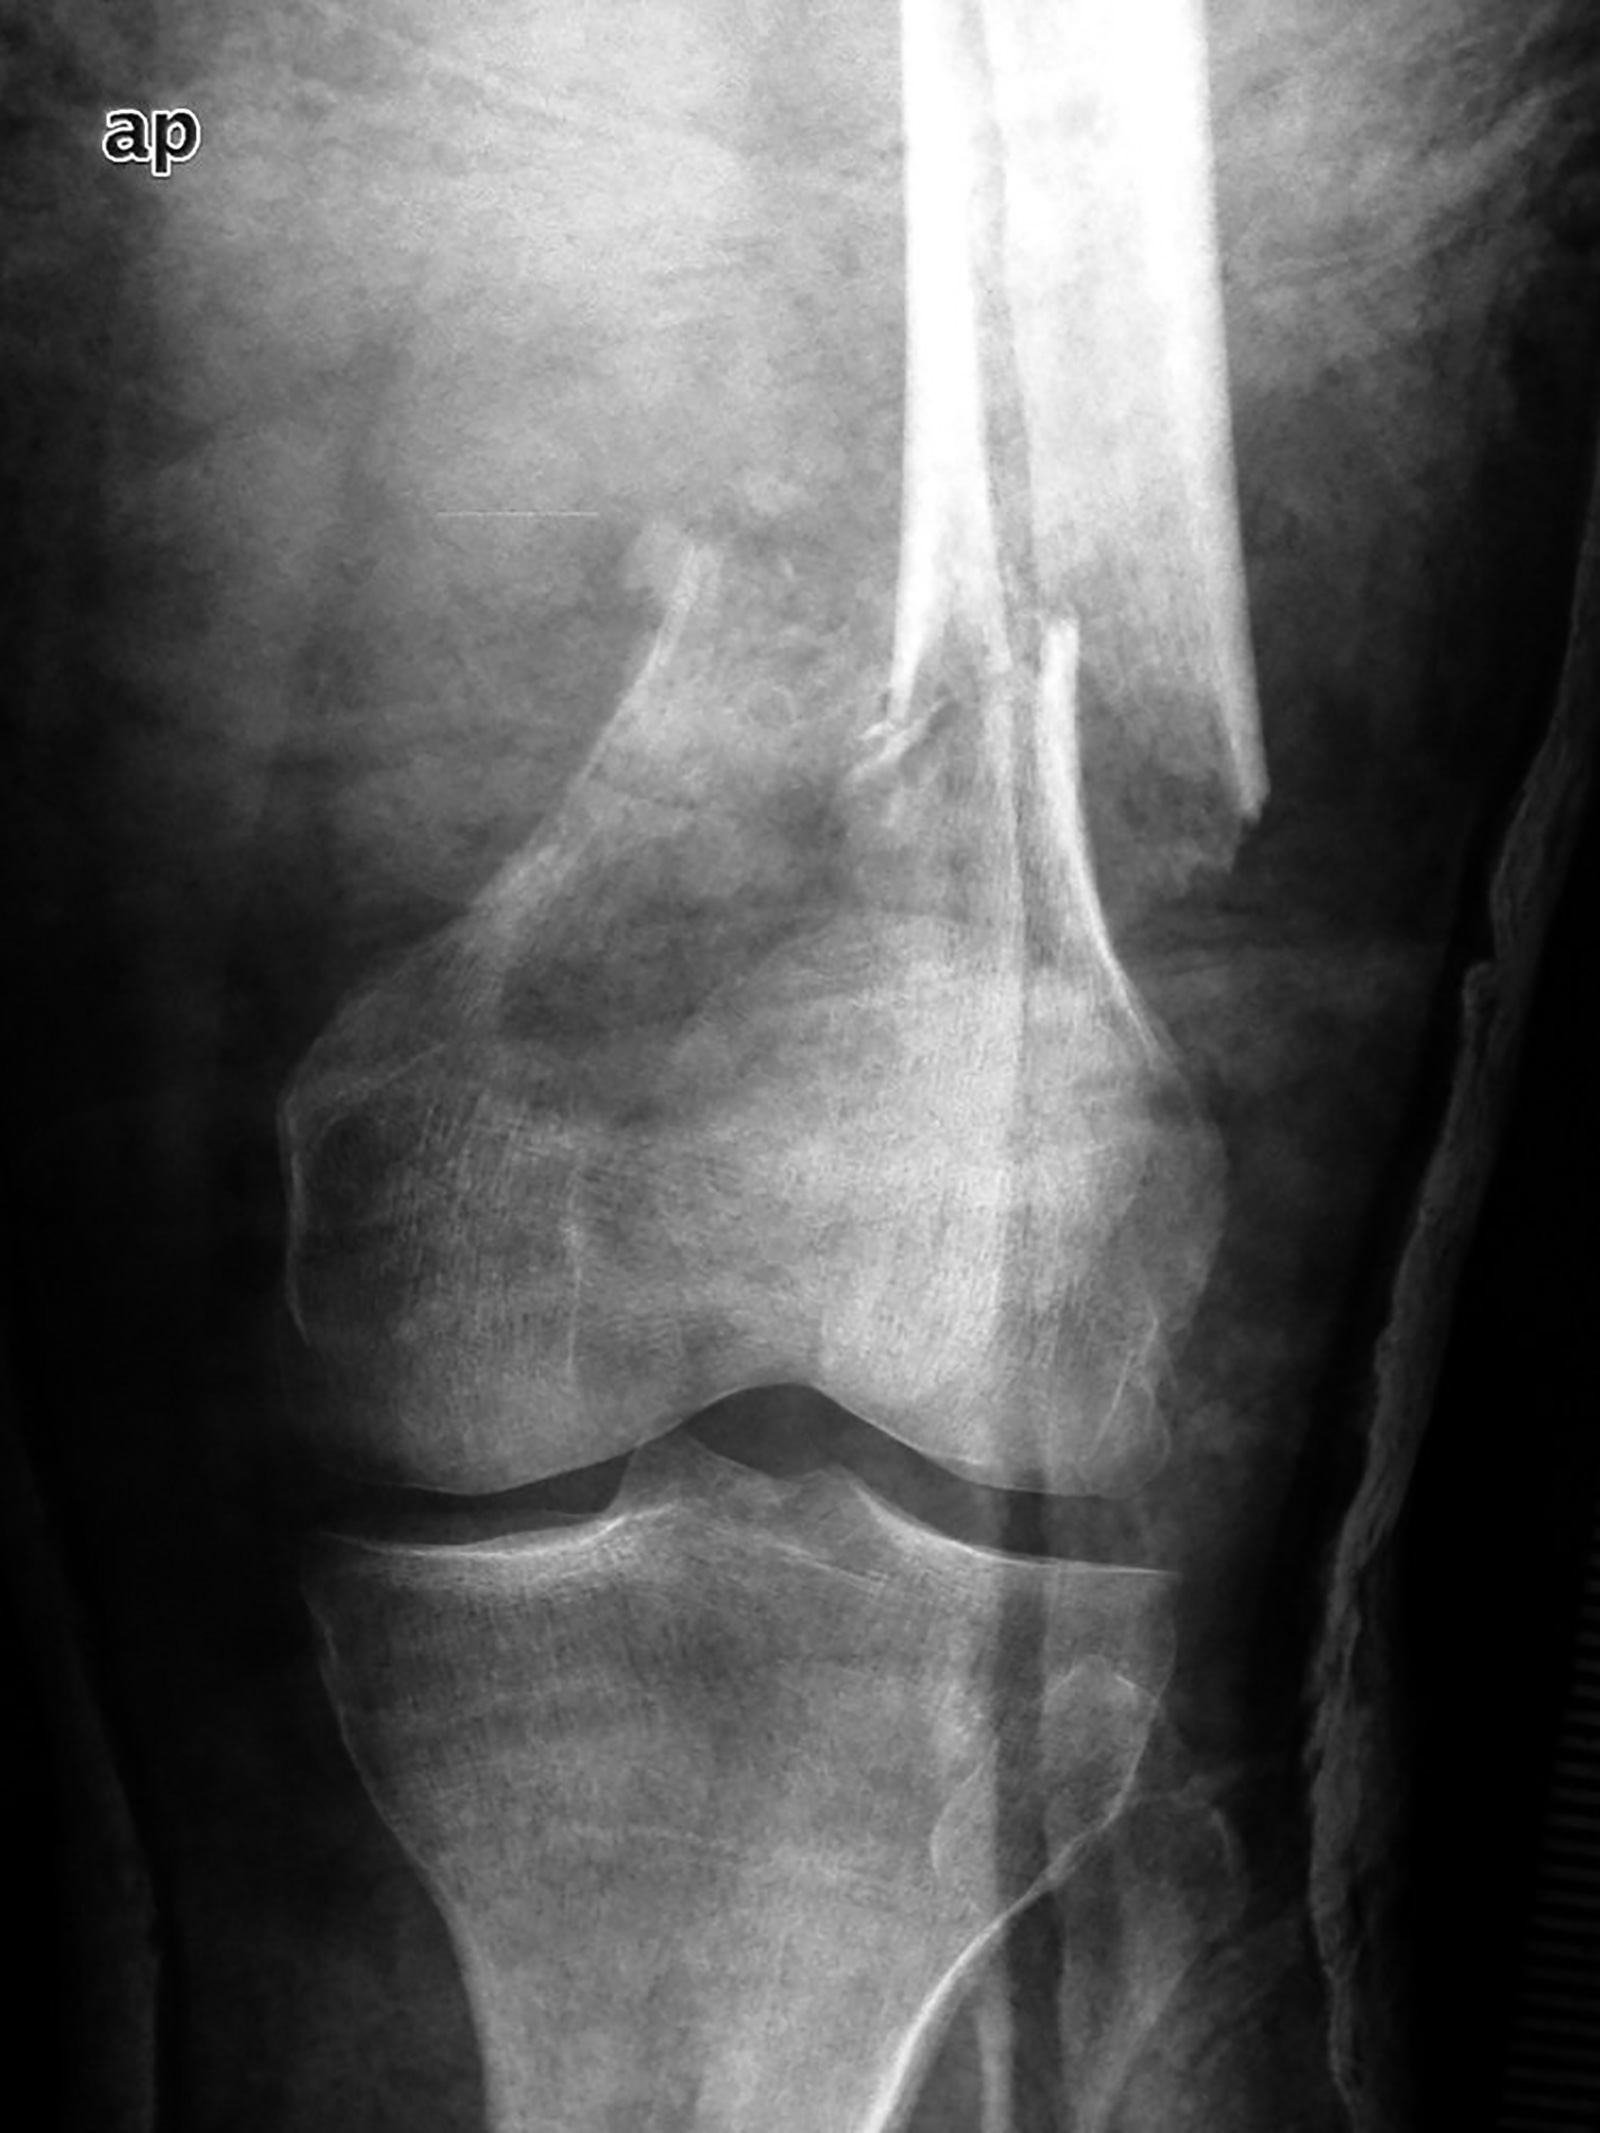 Abb. 8-77: Pathologische Fraktur bei einem Patienten mit einem Plasmozytom und Befall des distalen Femurs (Eigentum des Insituts für Klinische Radiologie der Universität Münster)